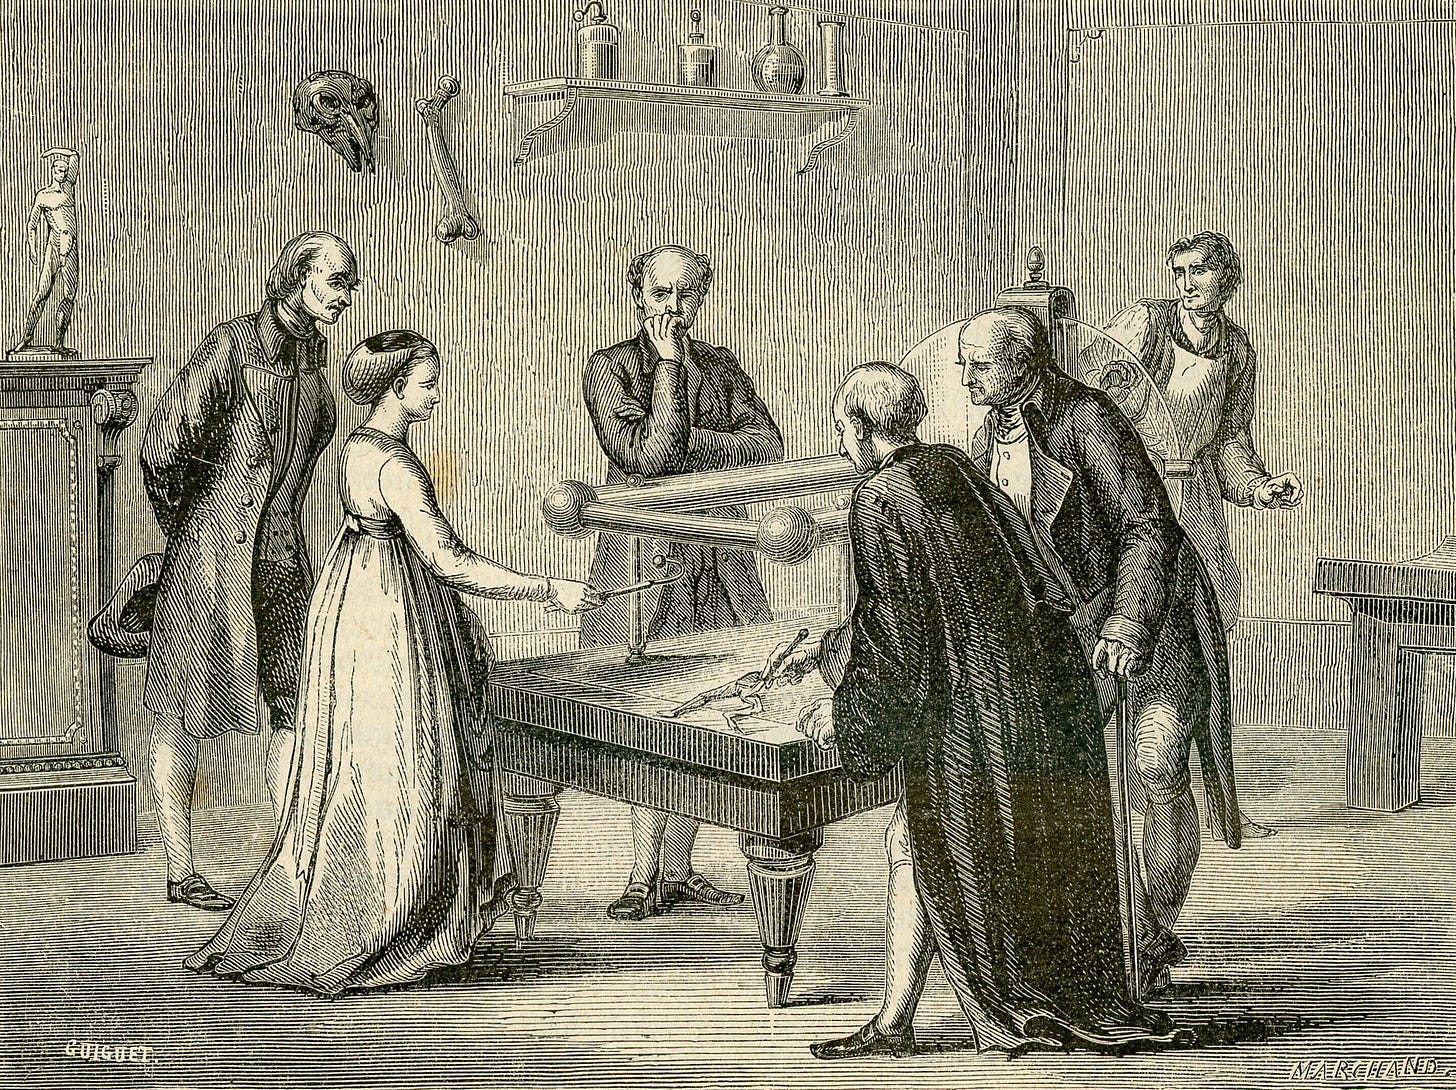 By Guiguet & Marchand, L’illustrazione popolare, 1886